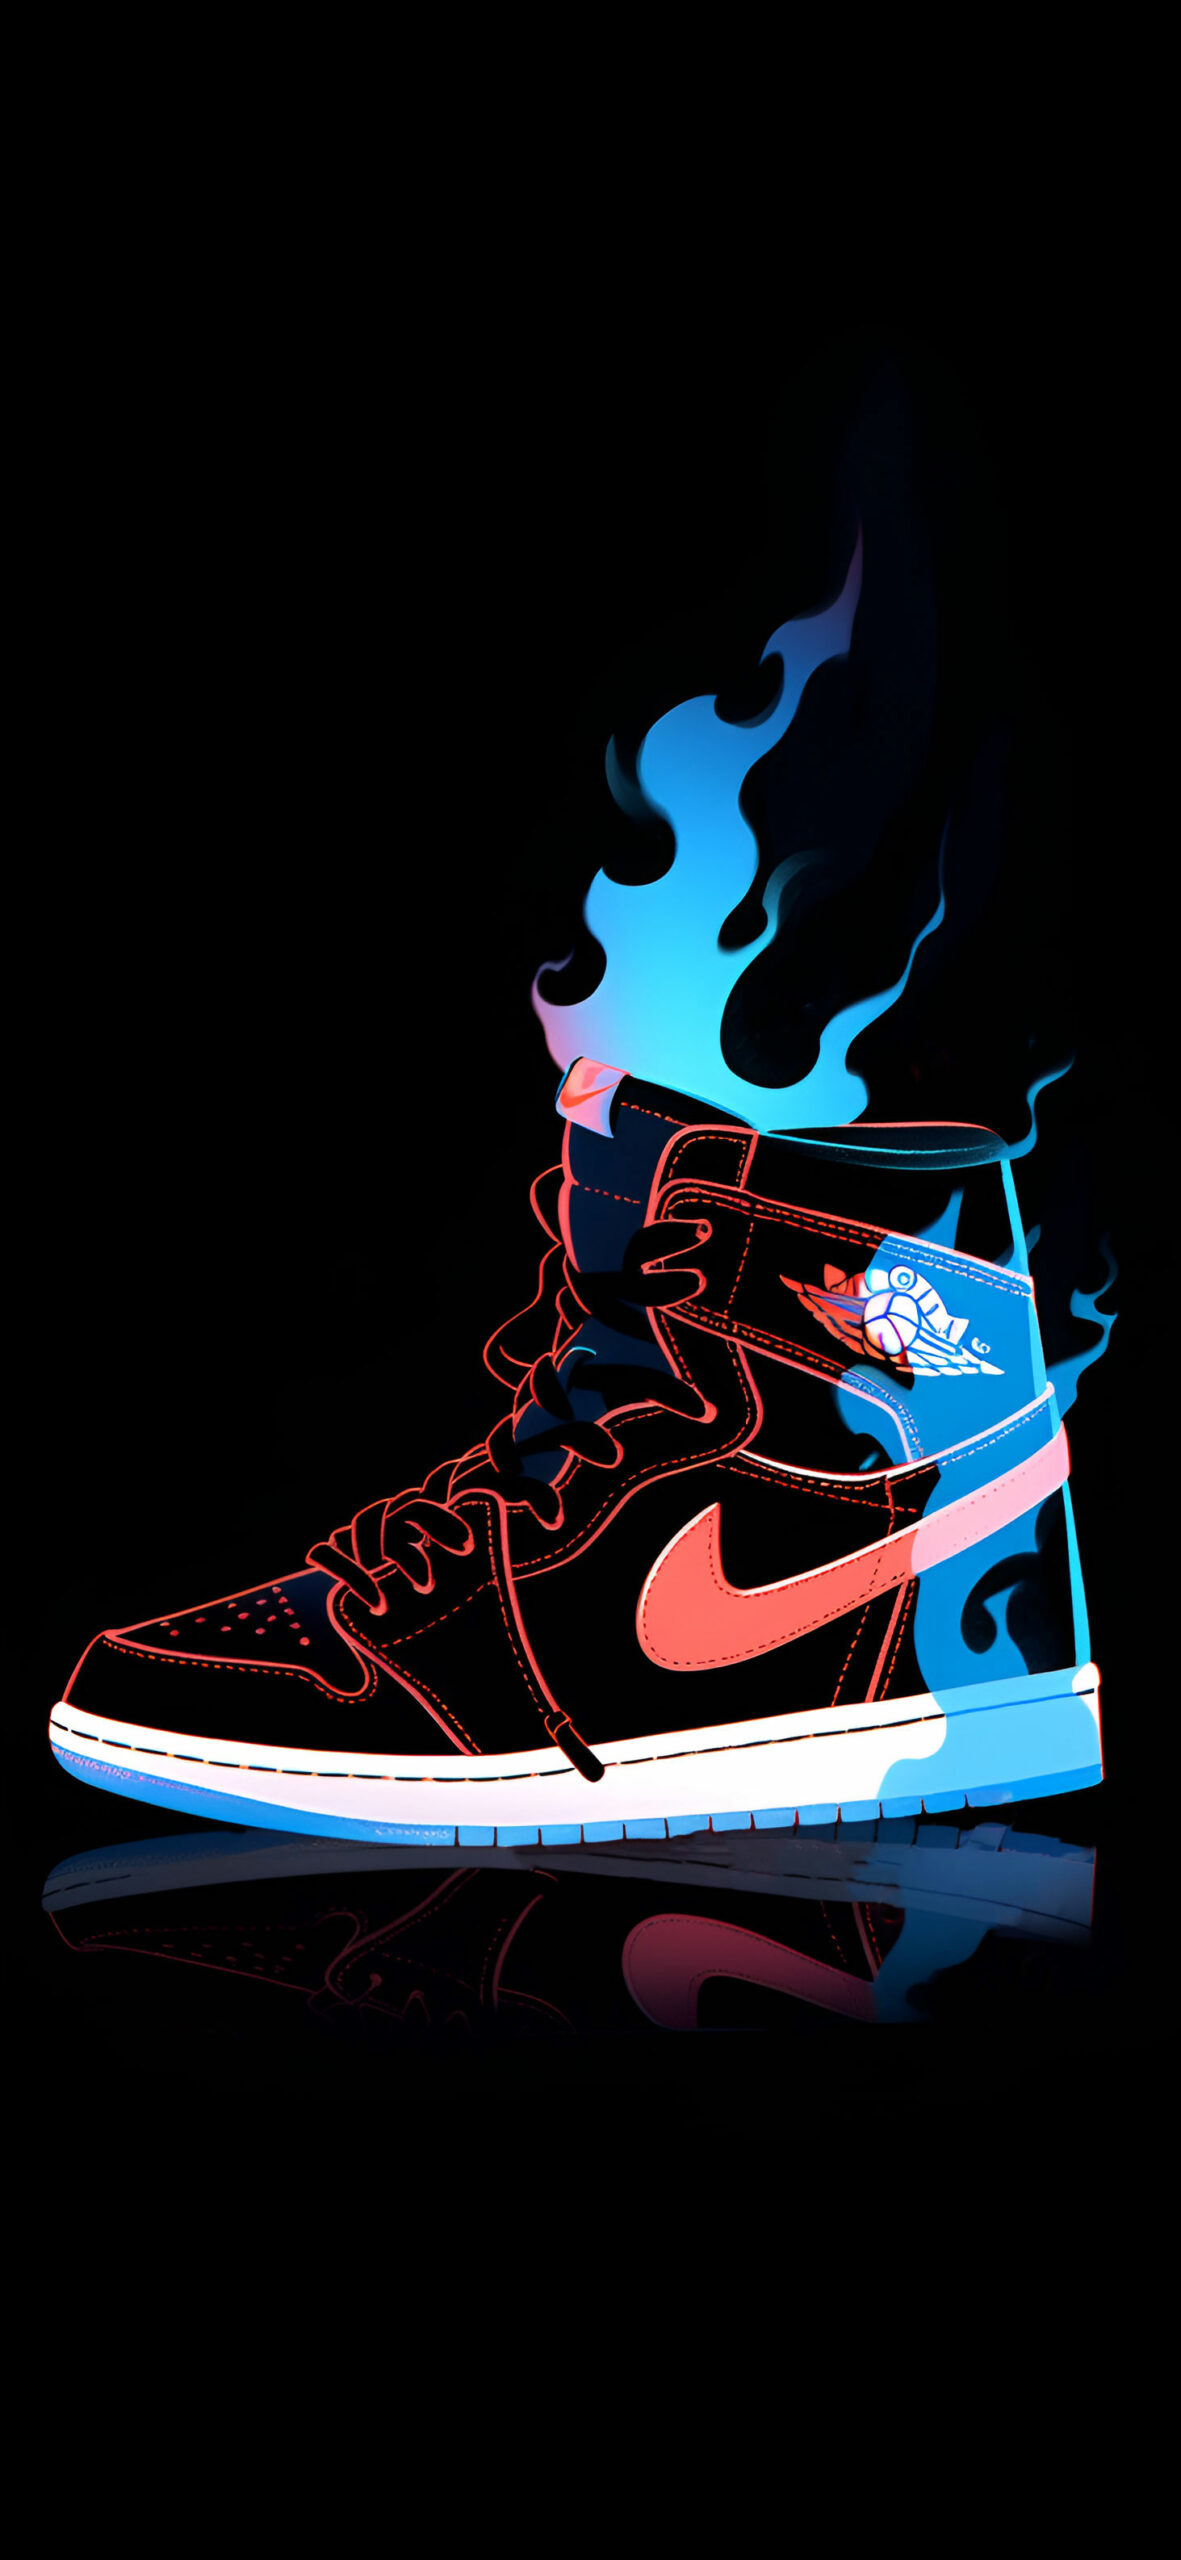 Fiery nike Aair jordan 1 cool wallpaper Sneakerhead art wallpa